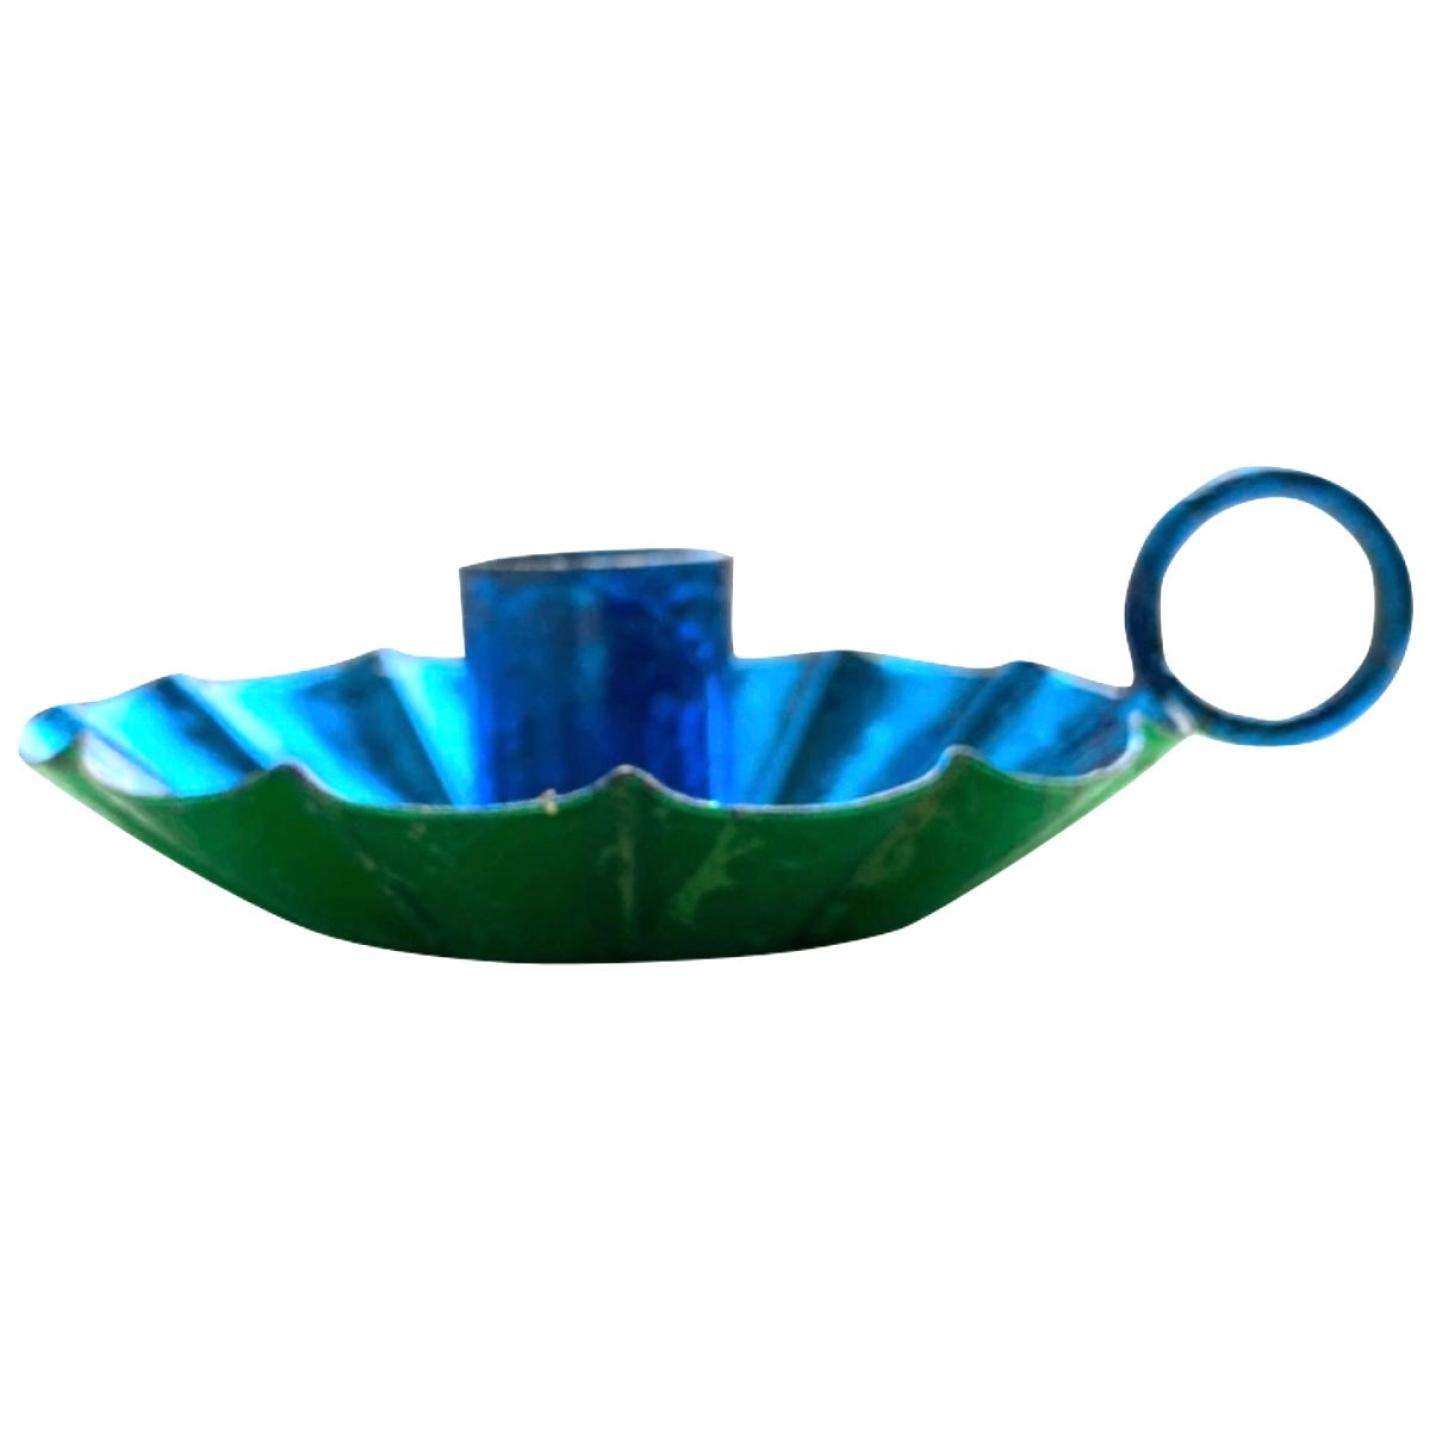 Kandelaar Flower kobalt blauw/groen metallic maat S en M - Maat M Ø 15cm